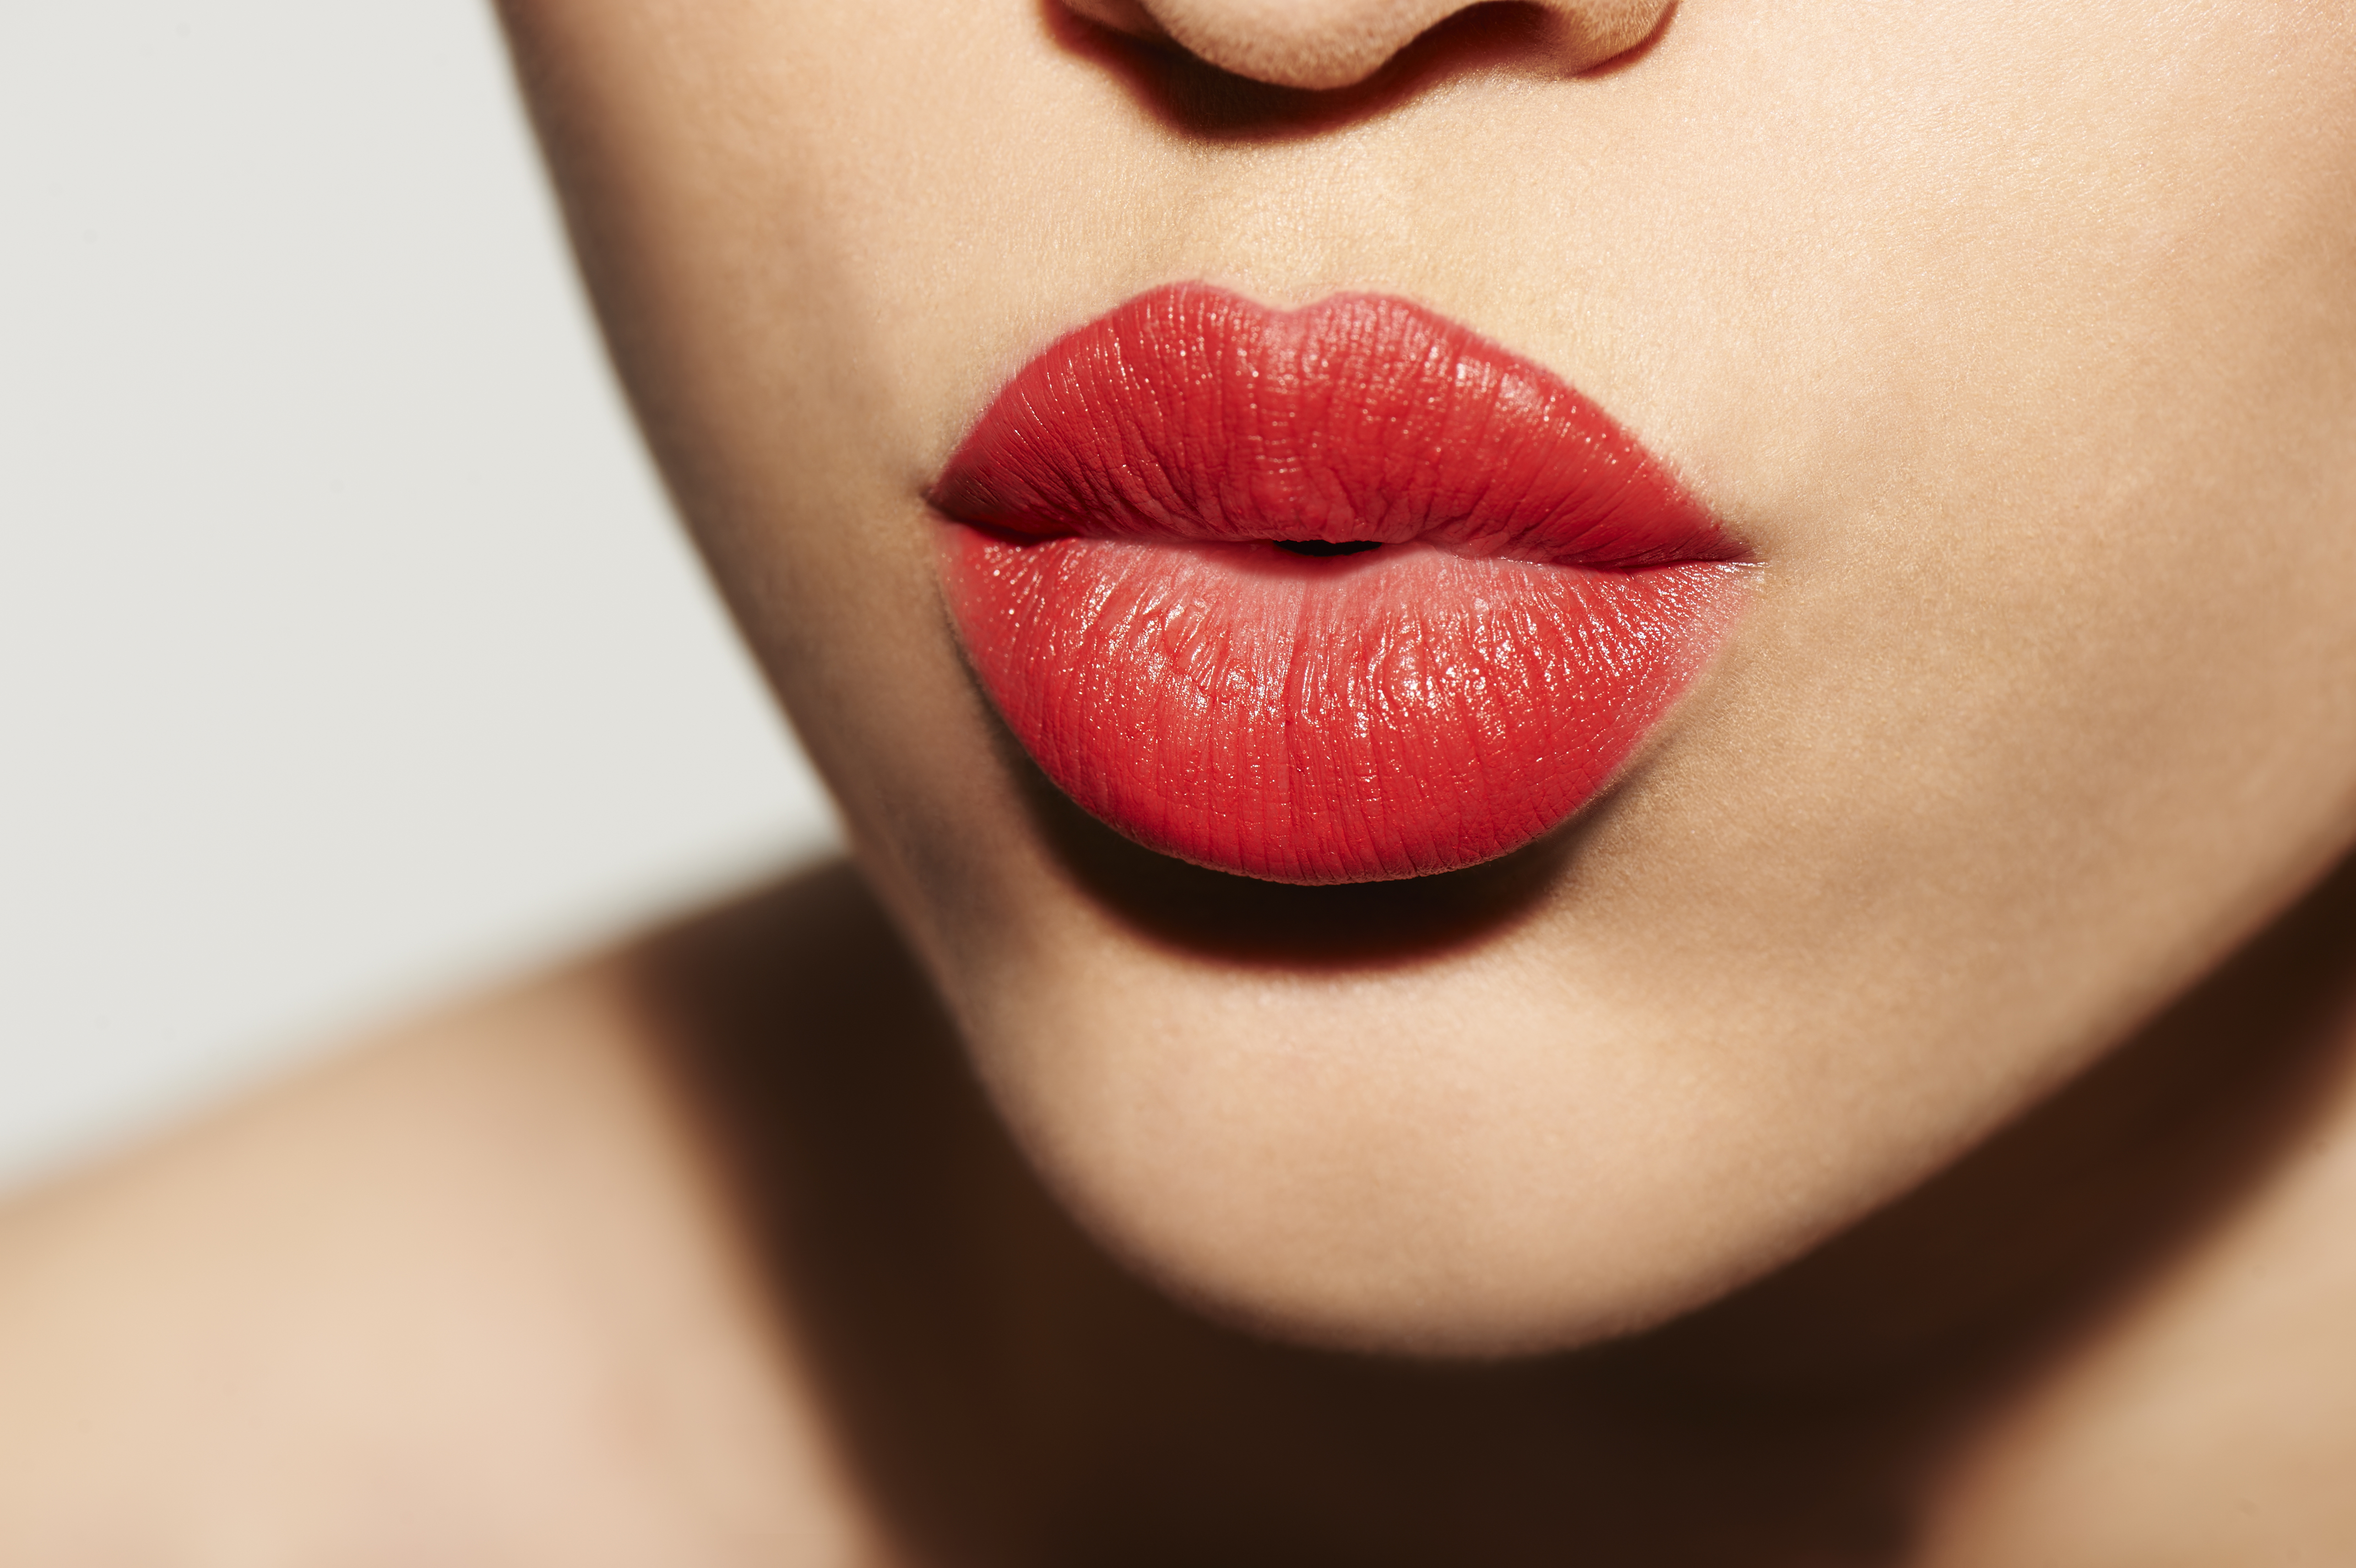 Cómo hacer botox casero para aumentar el volumen de los labios?